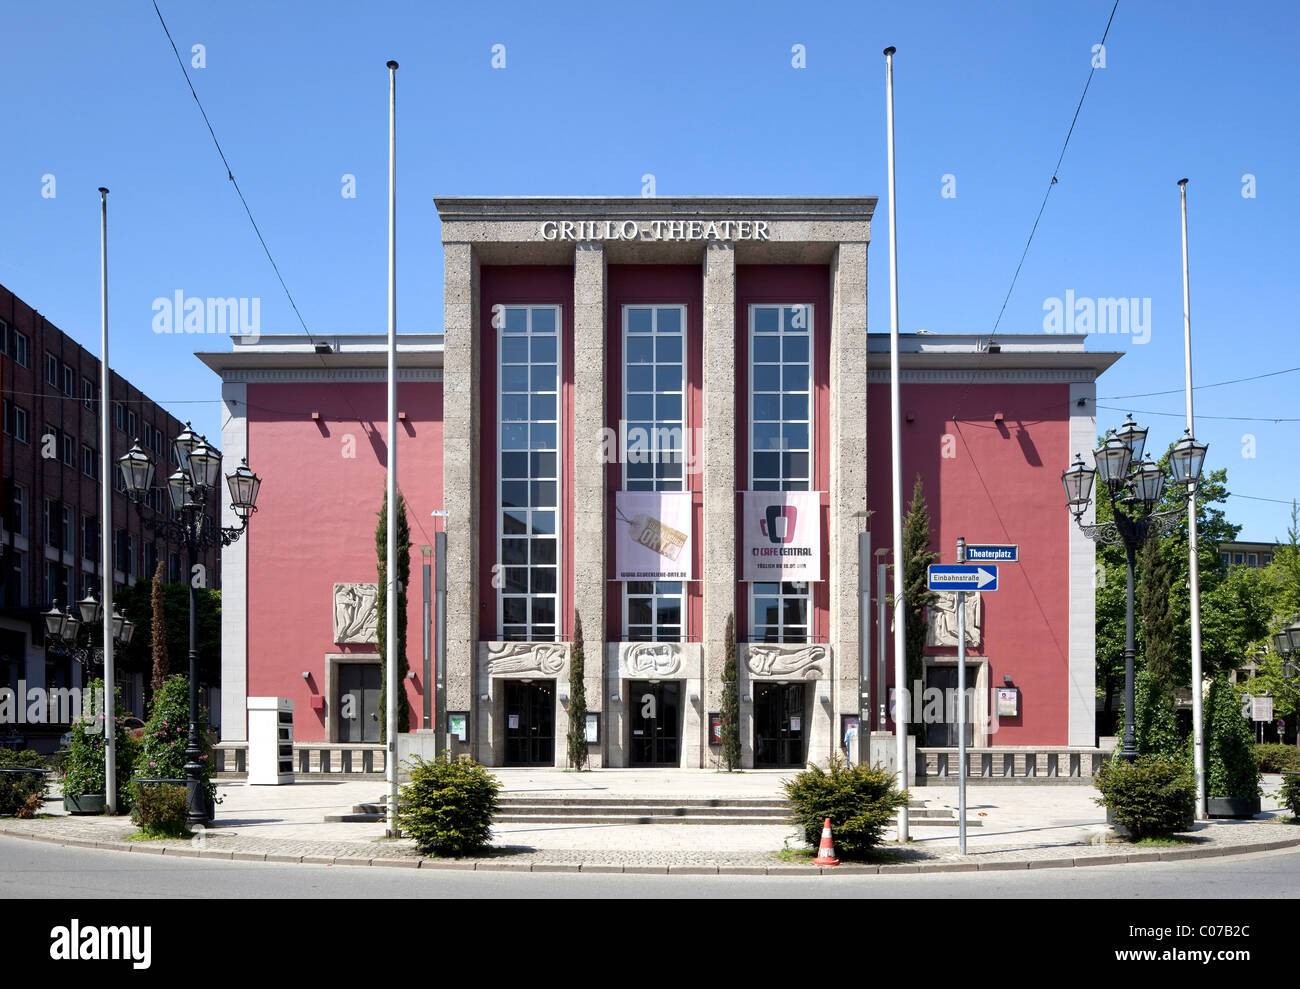 Grilleo-Theater, Essen, région de la Ruhr, Nordrhein-Westfalen, Germany, Europe Banque D'Images